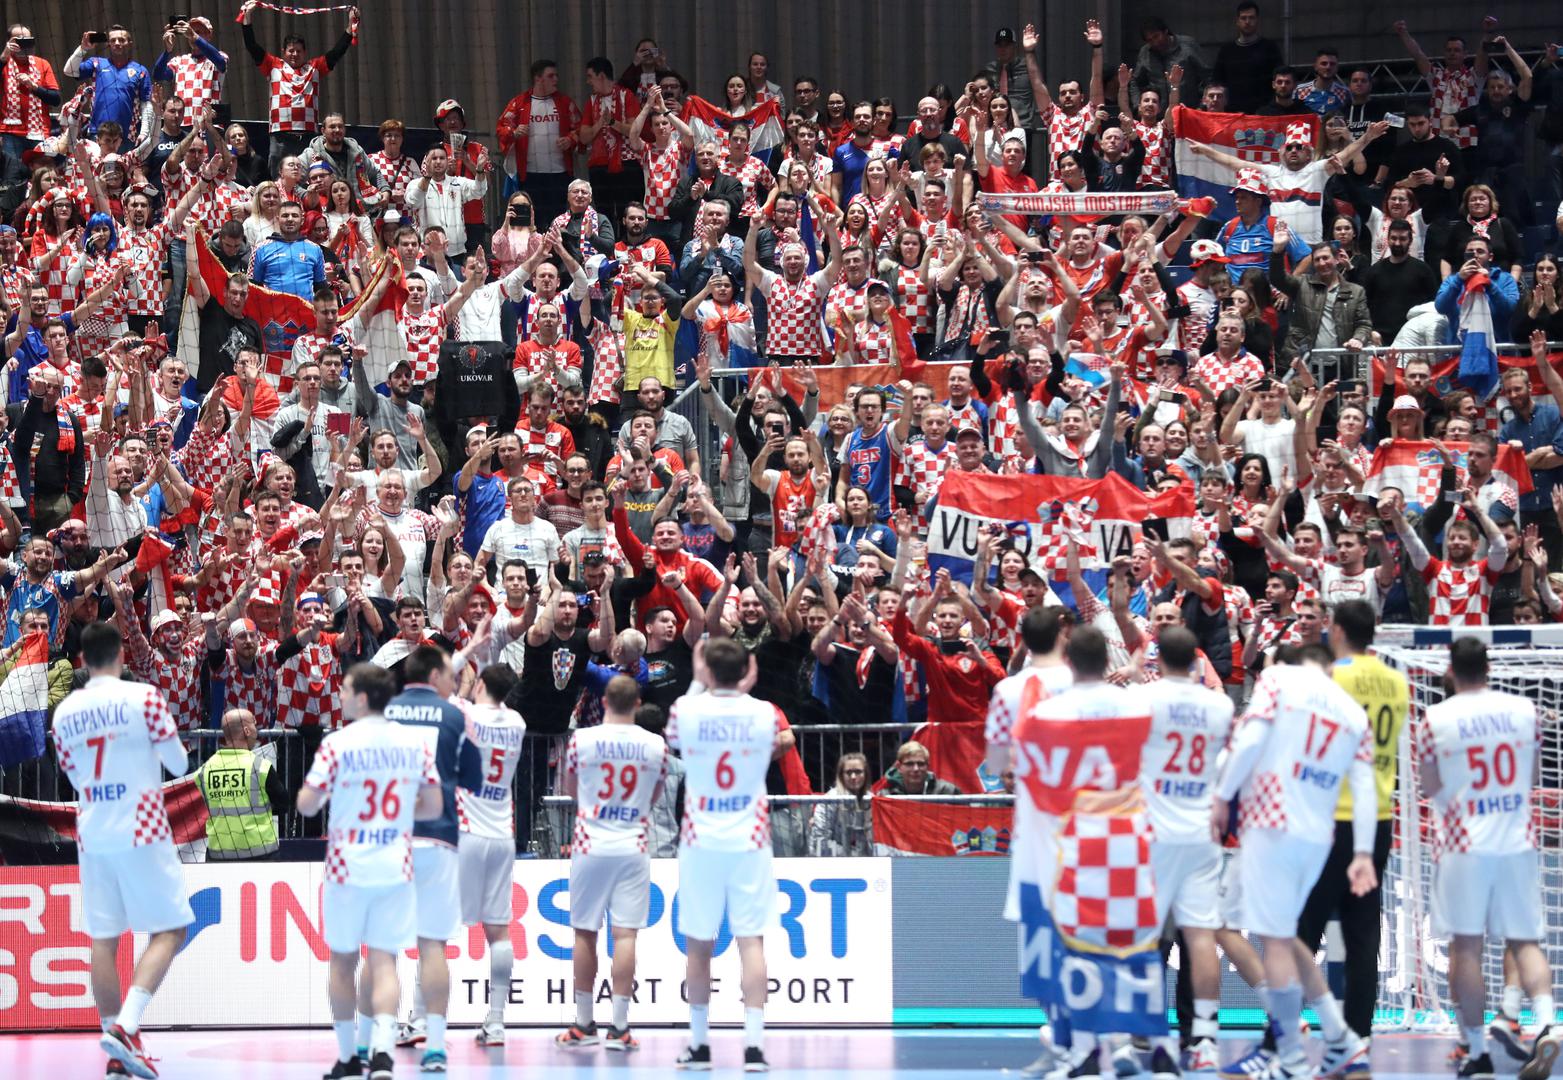 Hrvatski navijači opet su bili sjajni. Na tribinama ih se skupilo šest tisuća i bili su velika podrška kaubojima